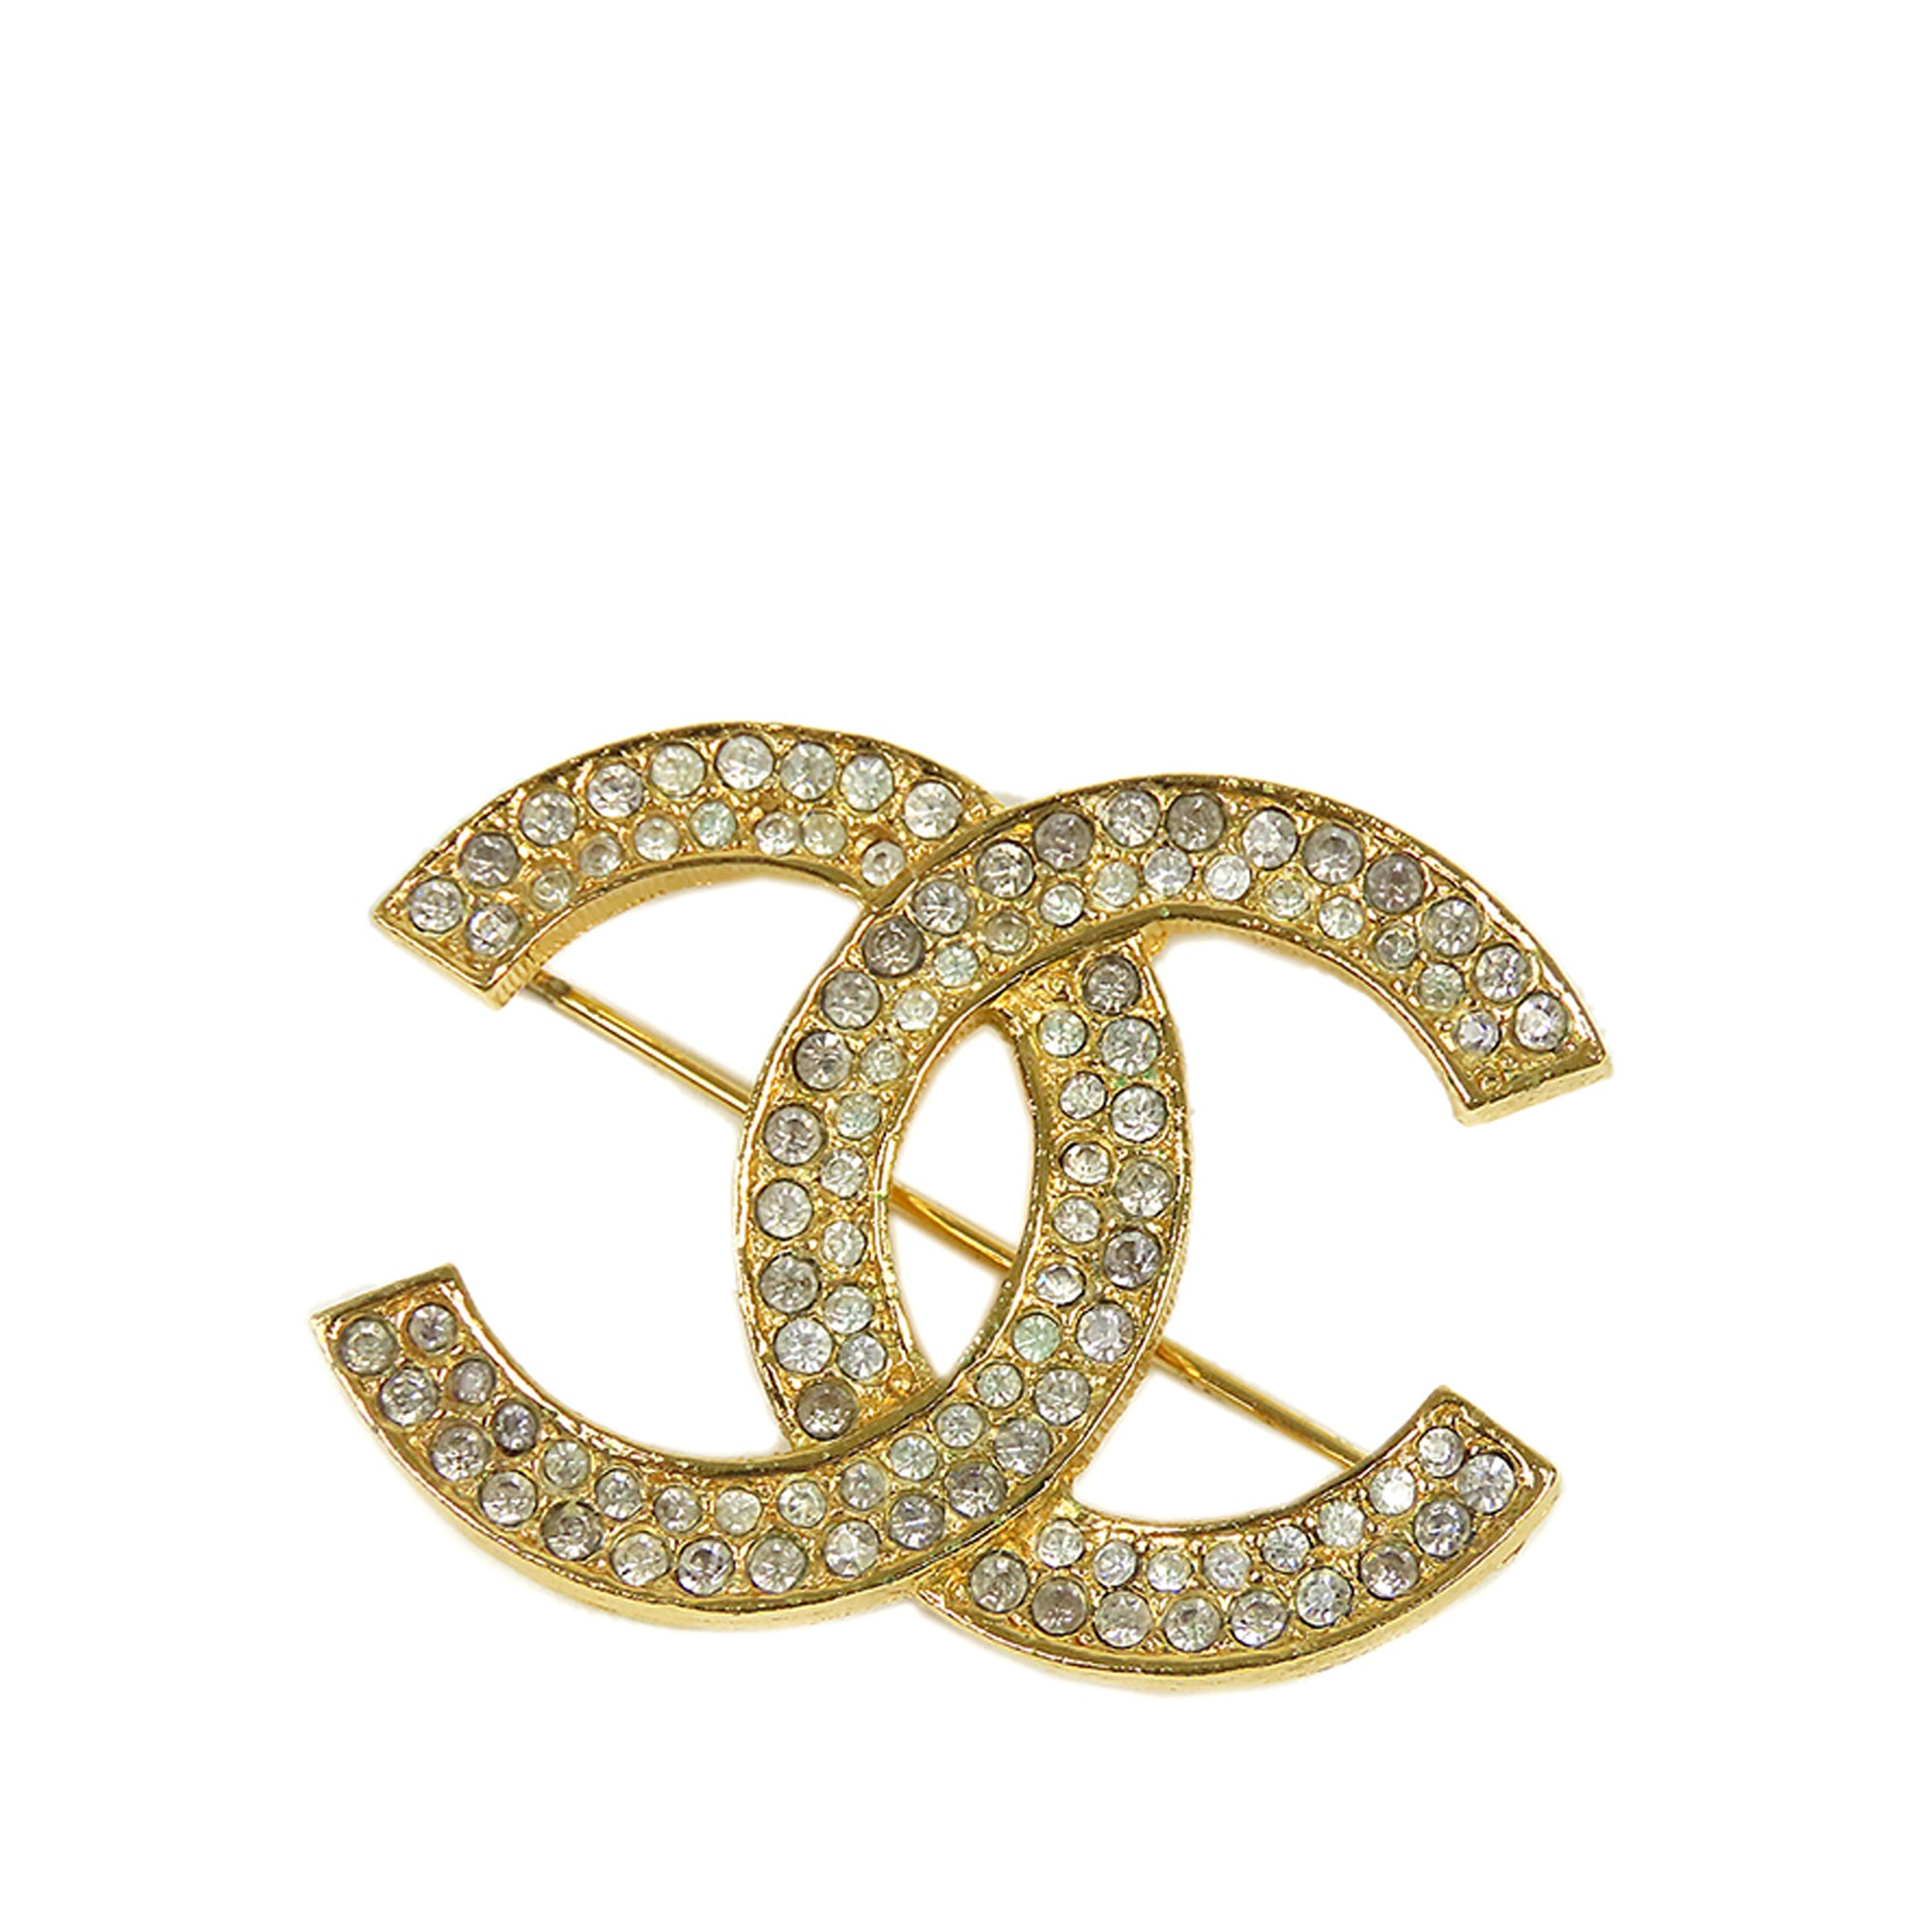 Gold Chanel CC Rhinestone Brooch